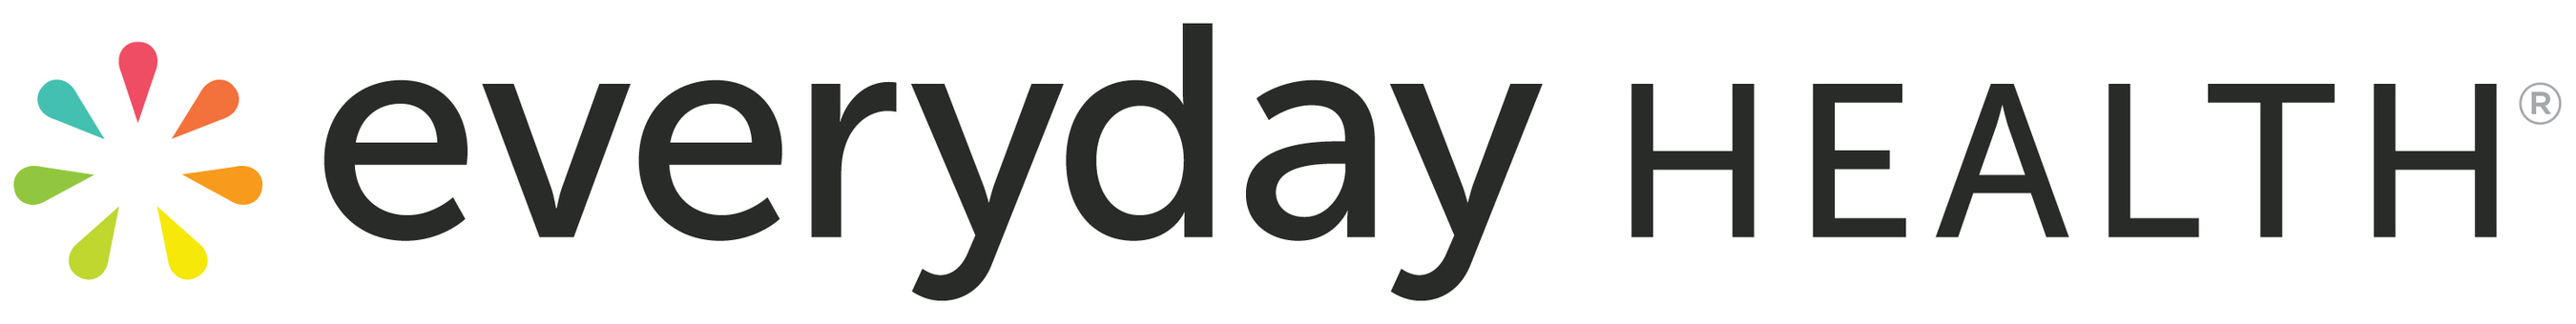 Everyday Health, Inc. Logo (PRNewsFoto/Everyday Health, Inc.)